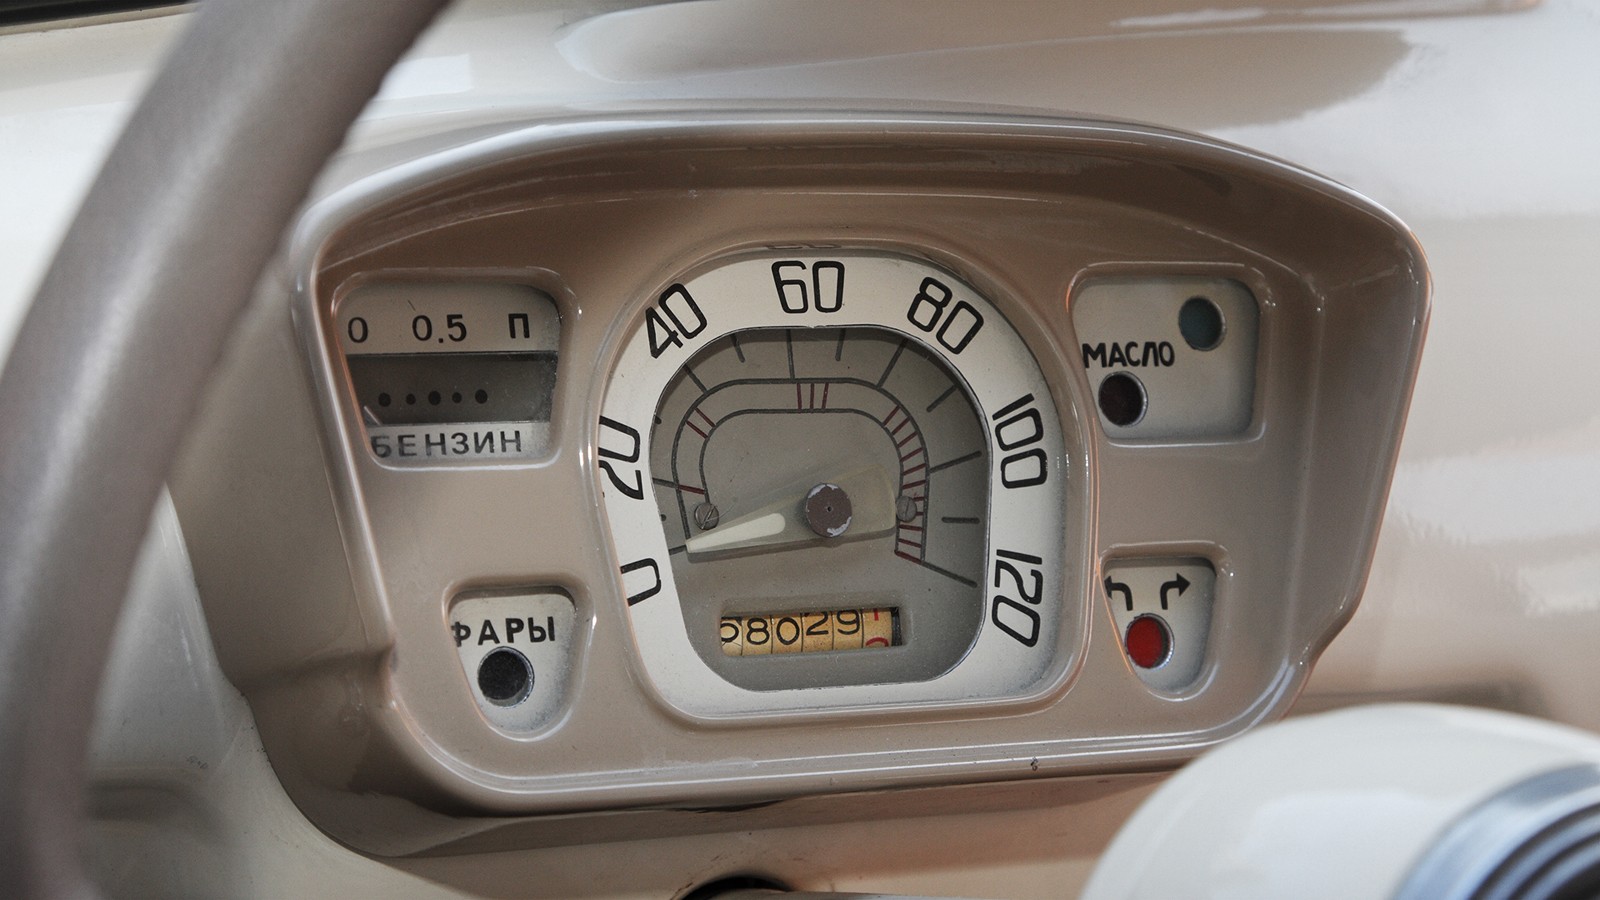 Щиток приборов без-термометра — признак ЗАЗ-965 выпуска до июля 1964 года